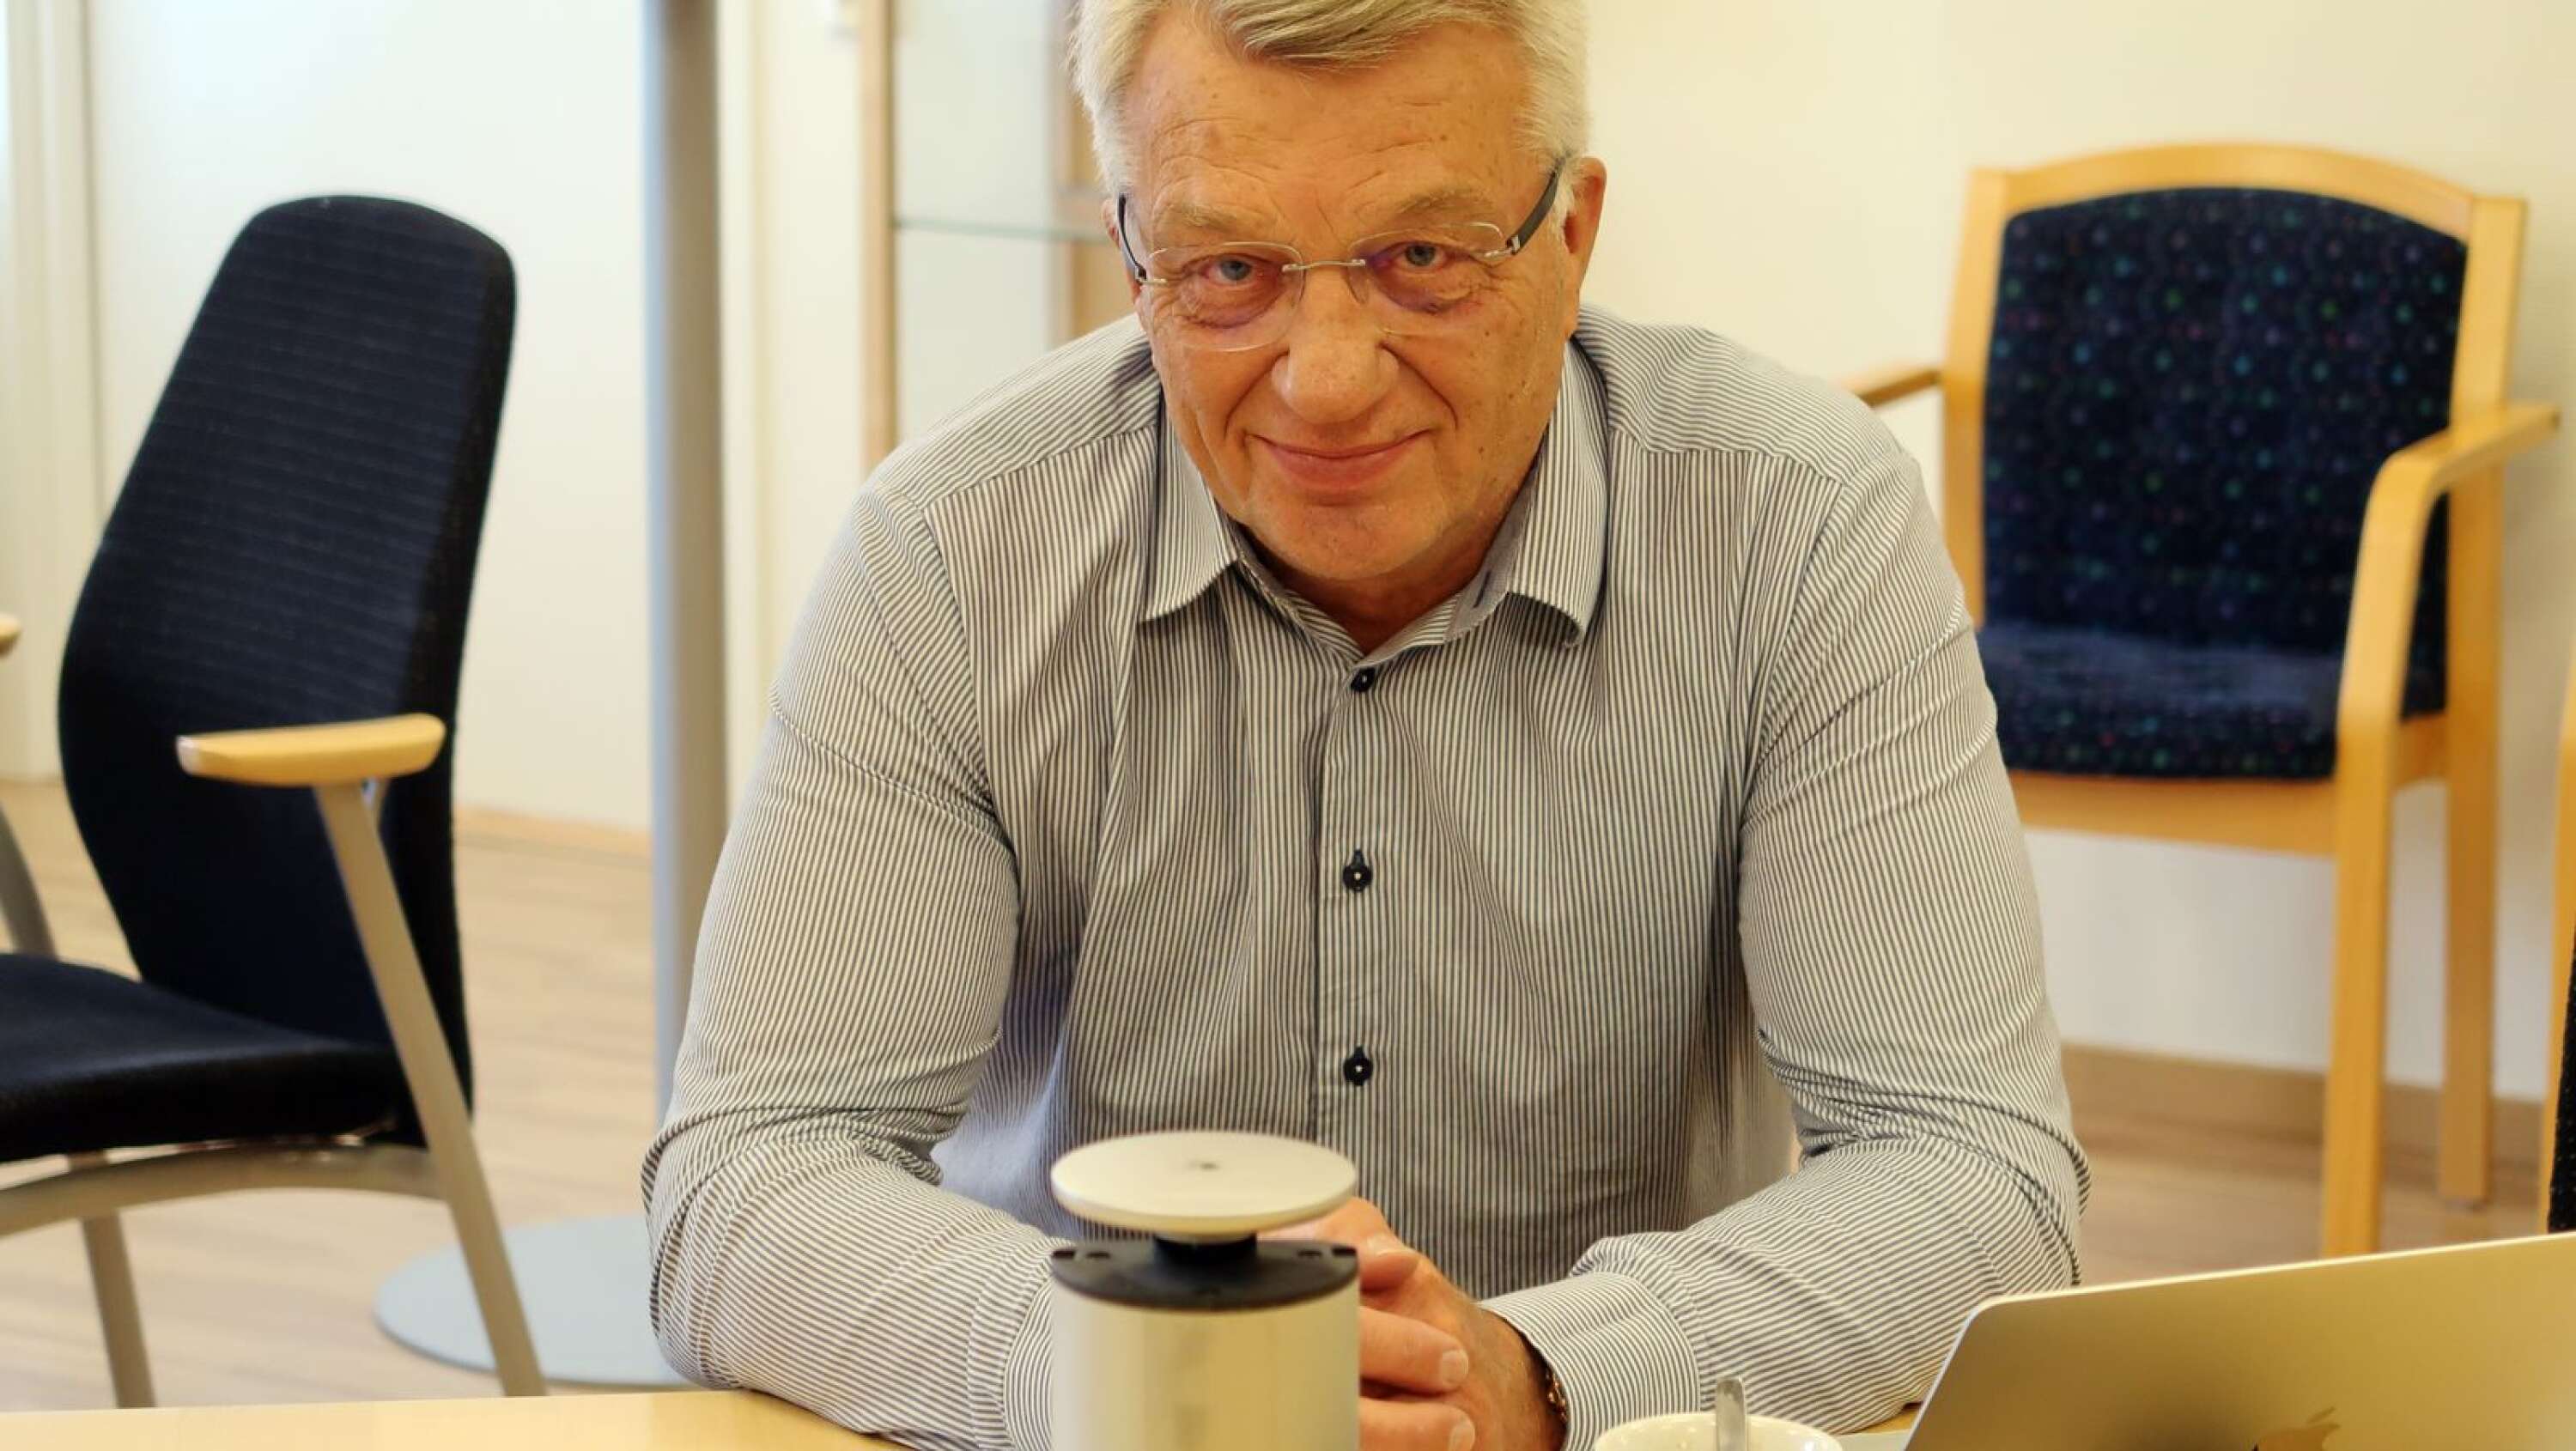 Bengtsfors kommunalråd Stig Bertilsson fick åka akut till hjärtoperation, men jobbar redan och räknar med att snart vara återställd.